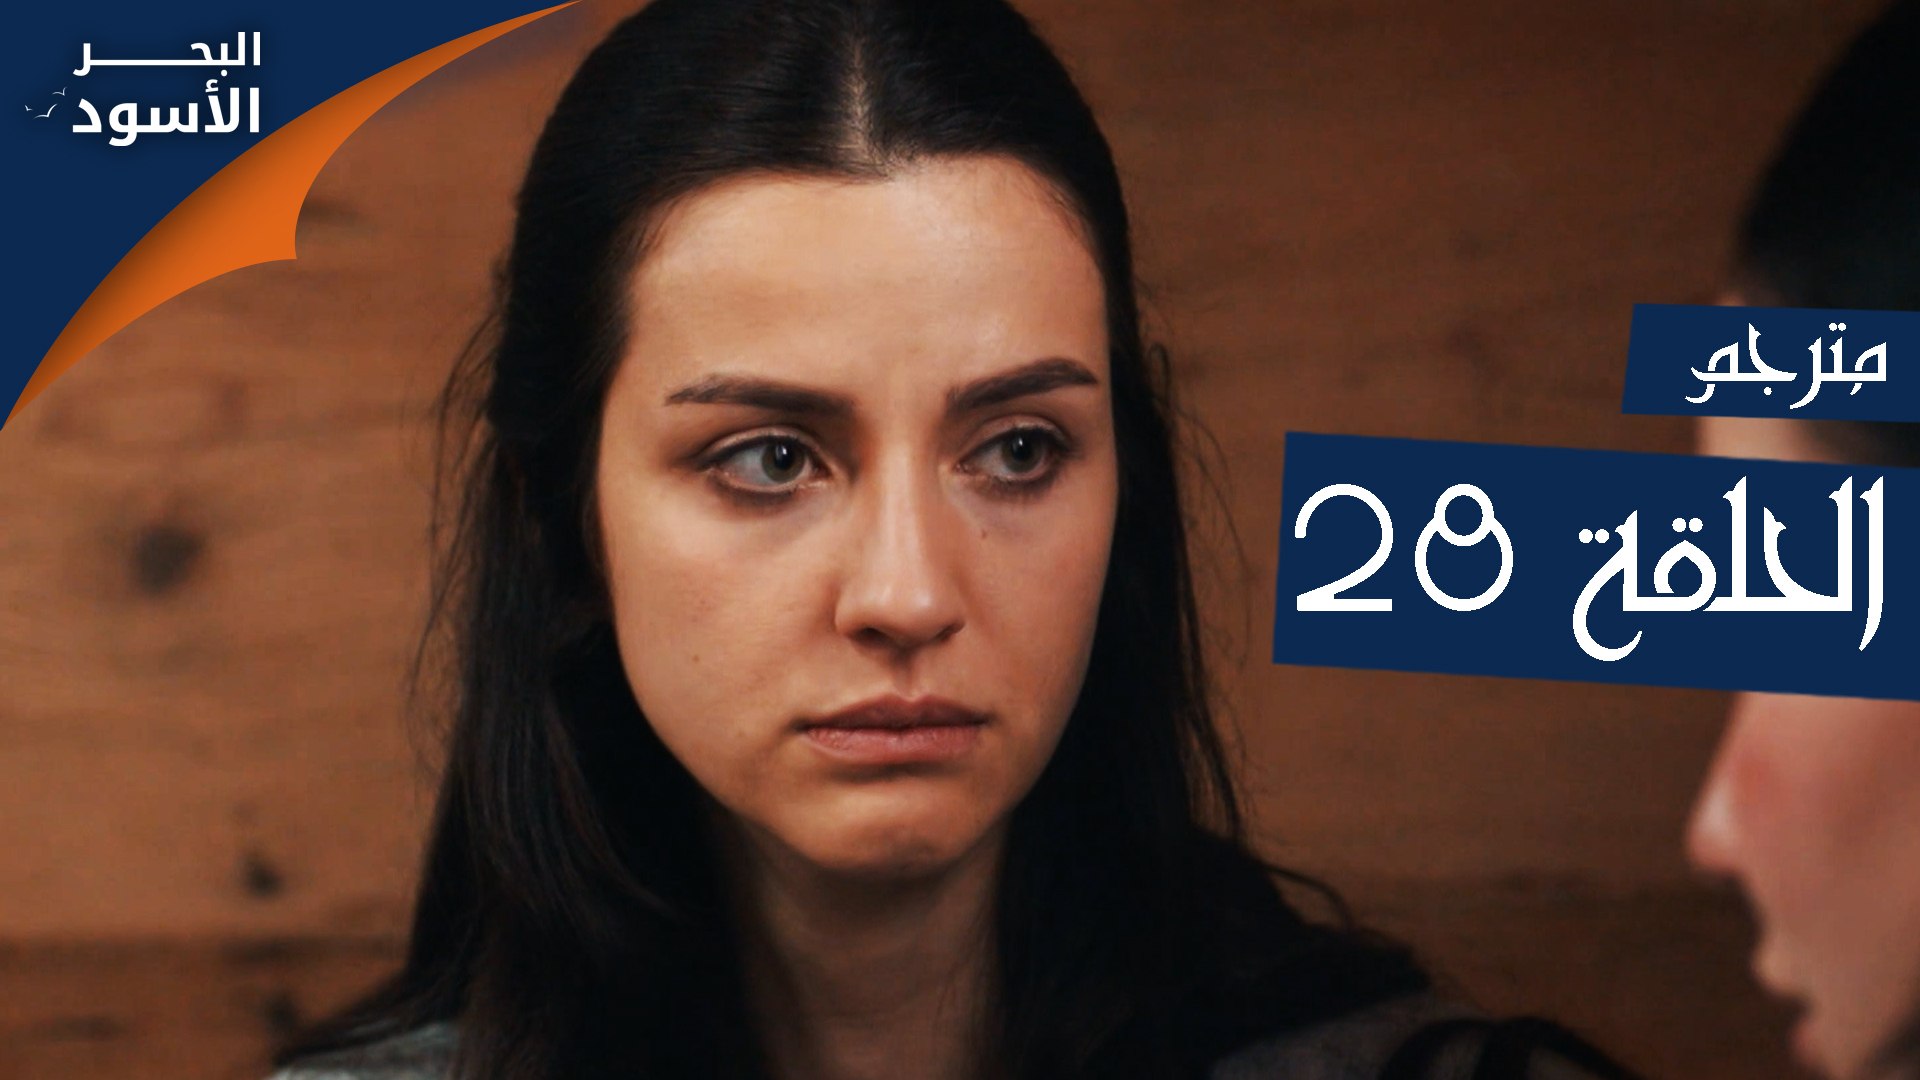 مسلسل البحر الأسود - الحلقة 28 | مترجم - فيديو Dailymotion